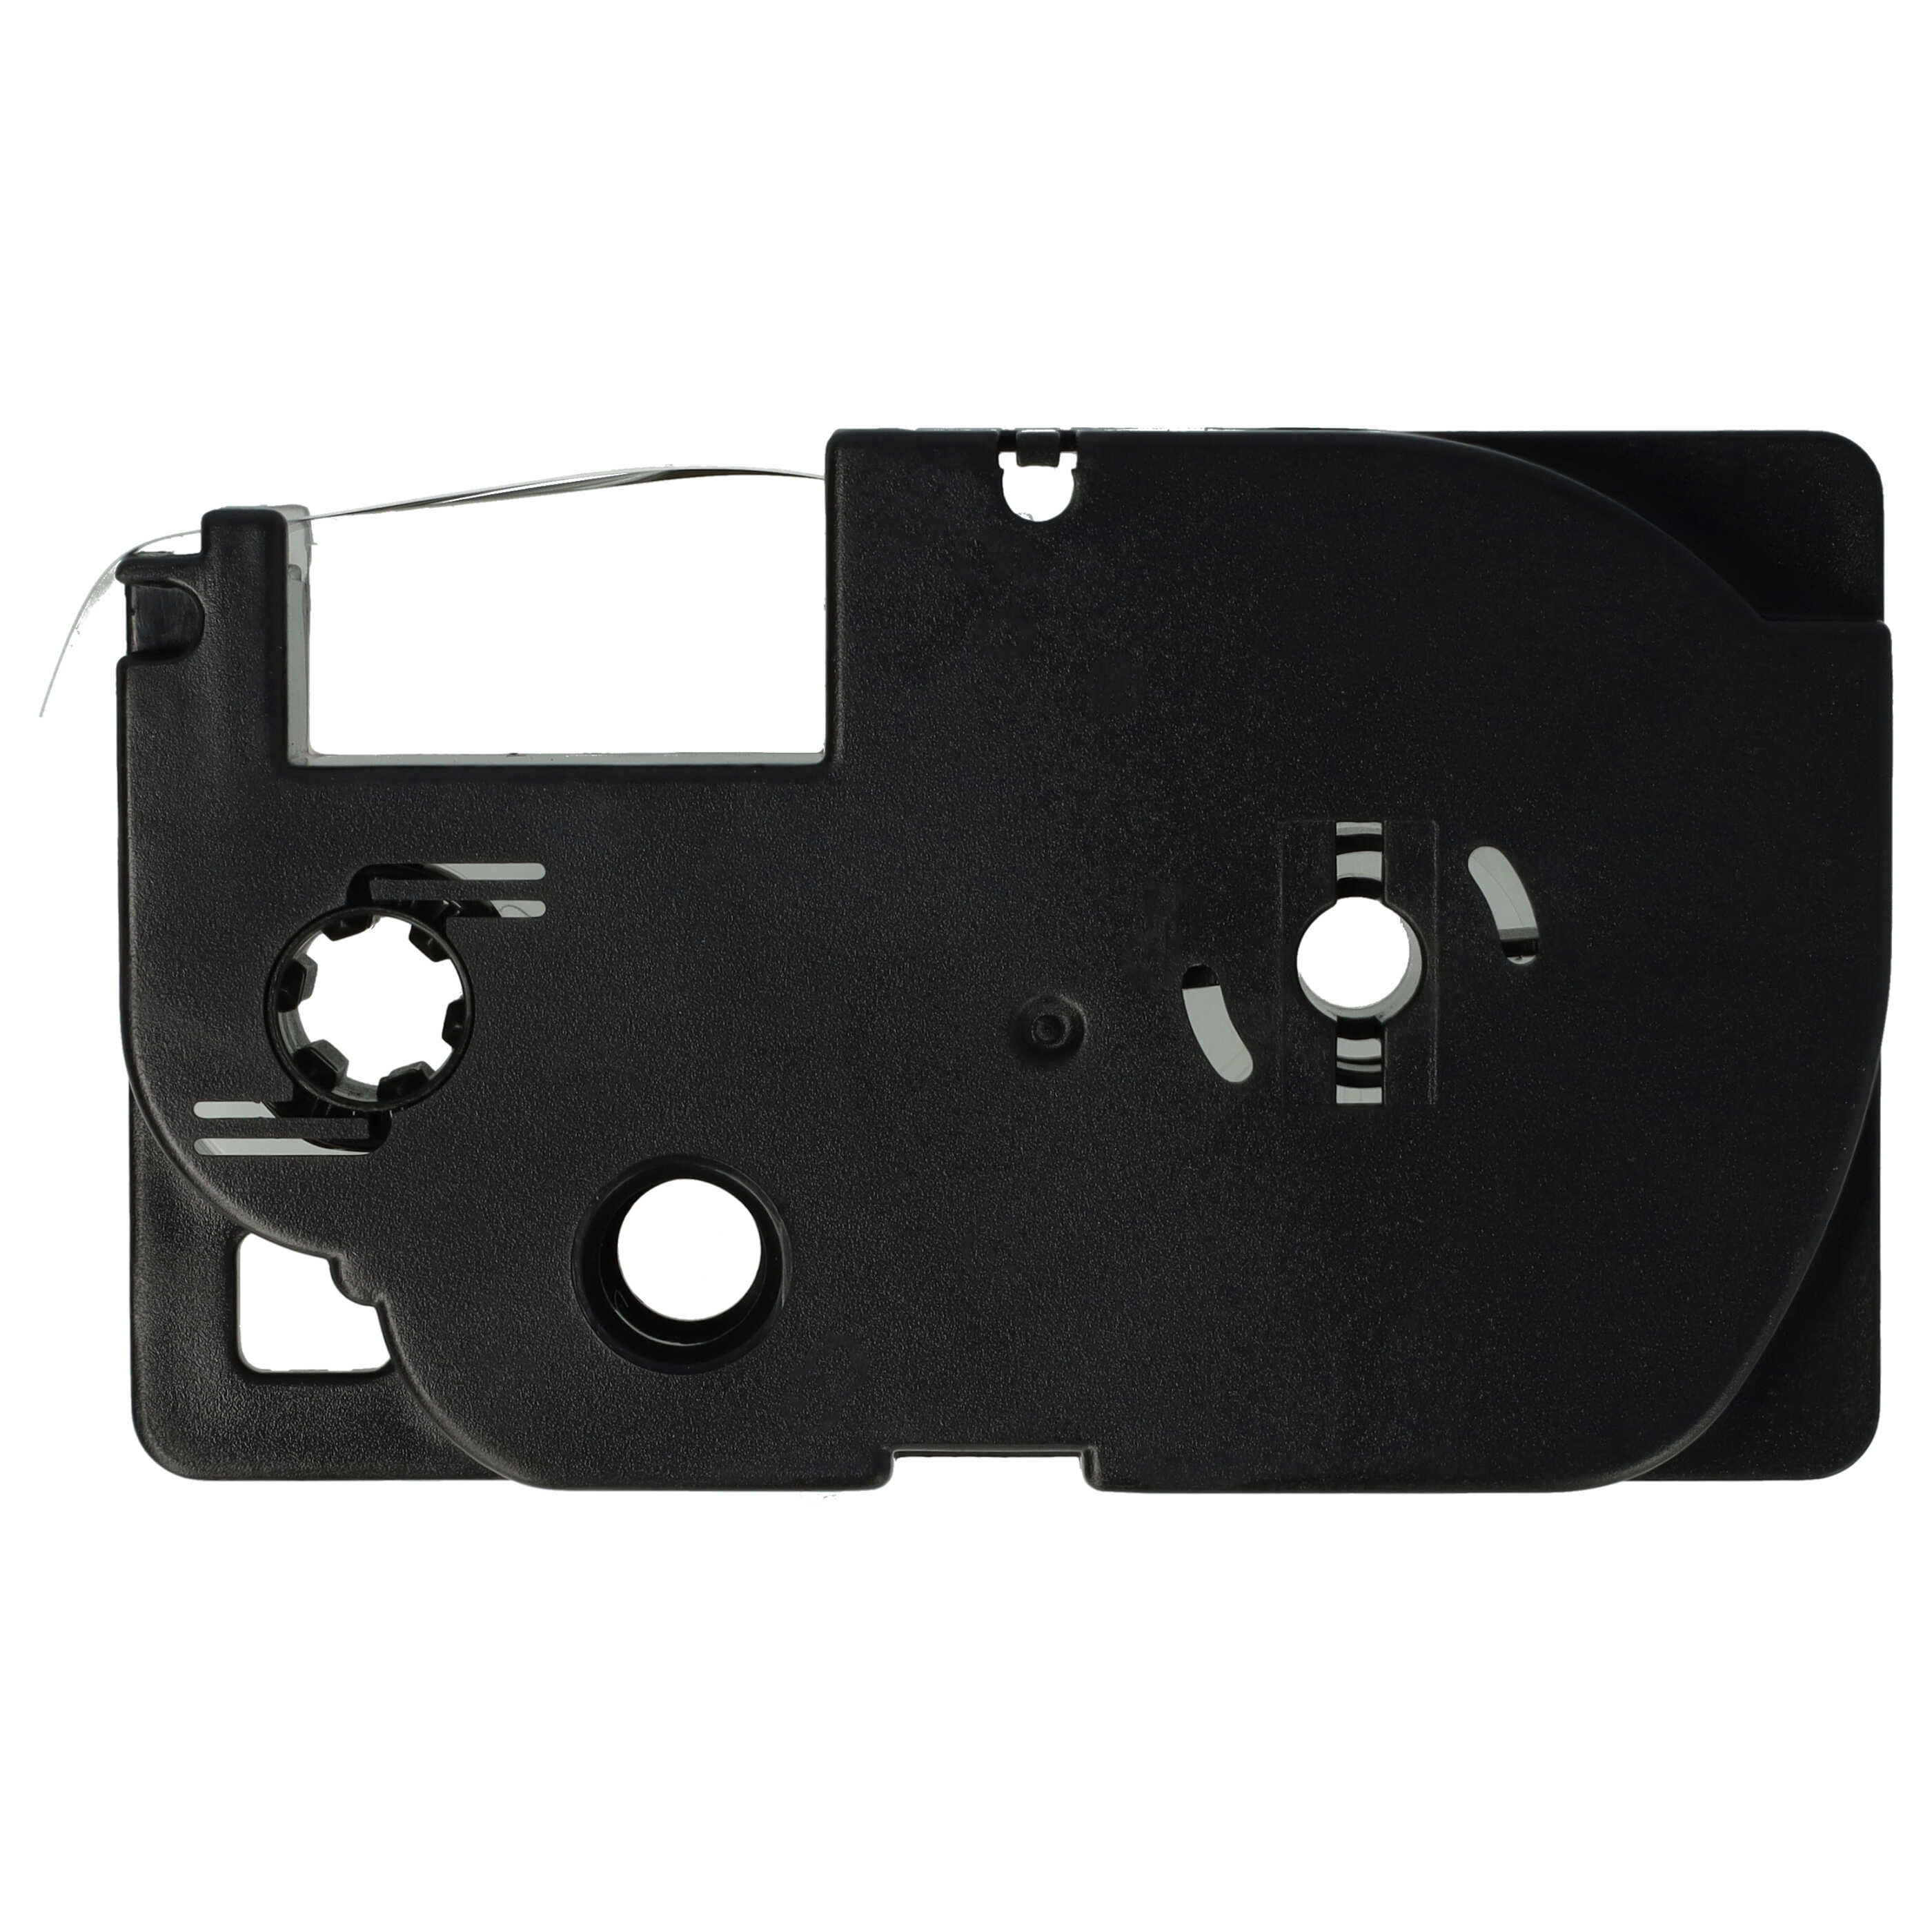 Cassette à ruban remplace Casio XR-9WE1, XR-9WE - 9mm lettrage Noir ruban Blanc